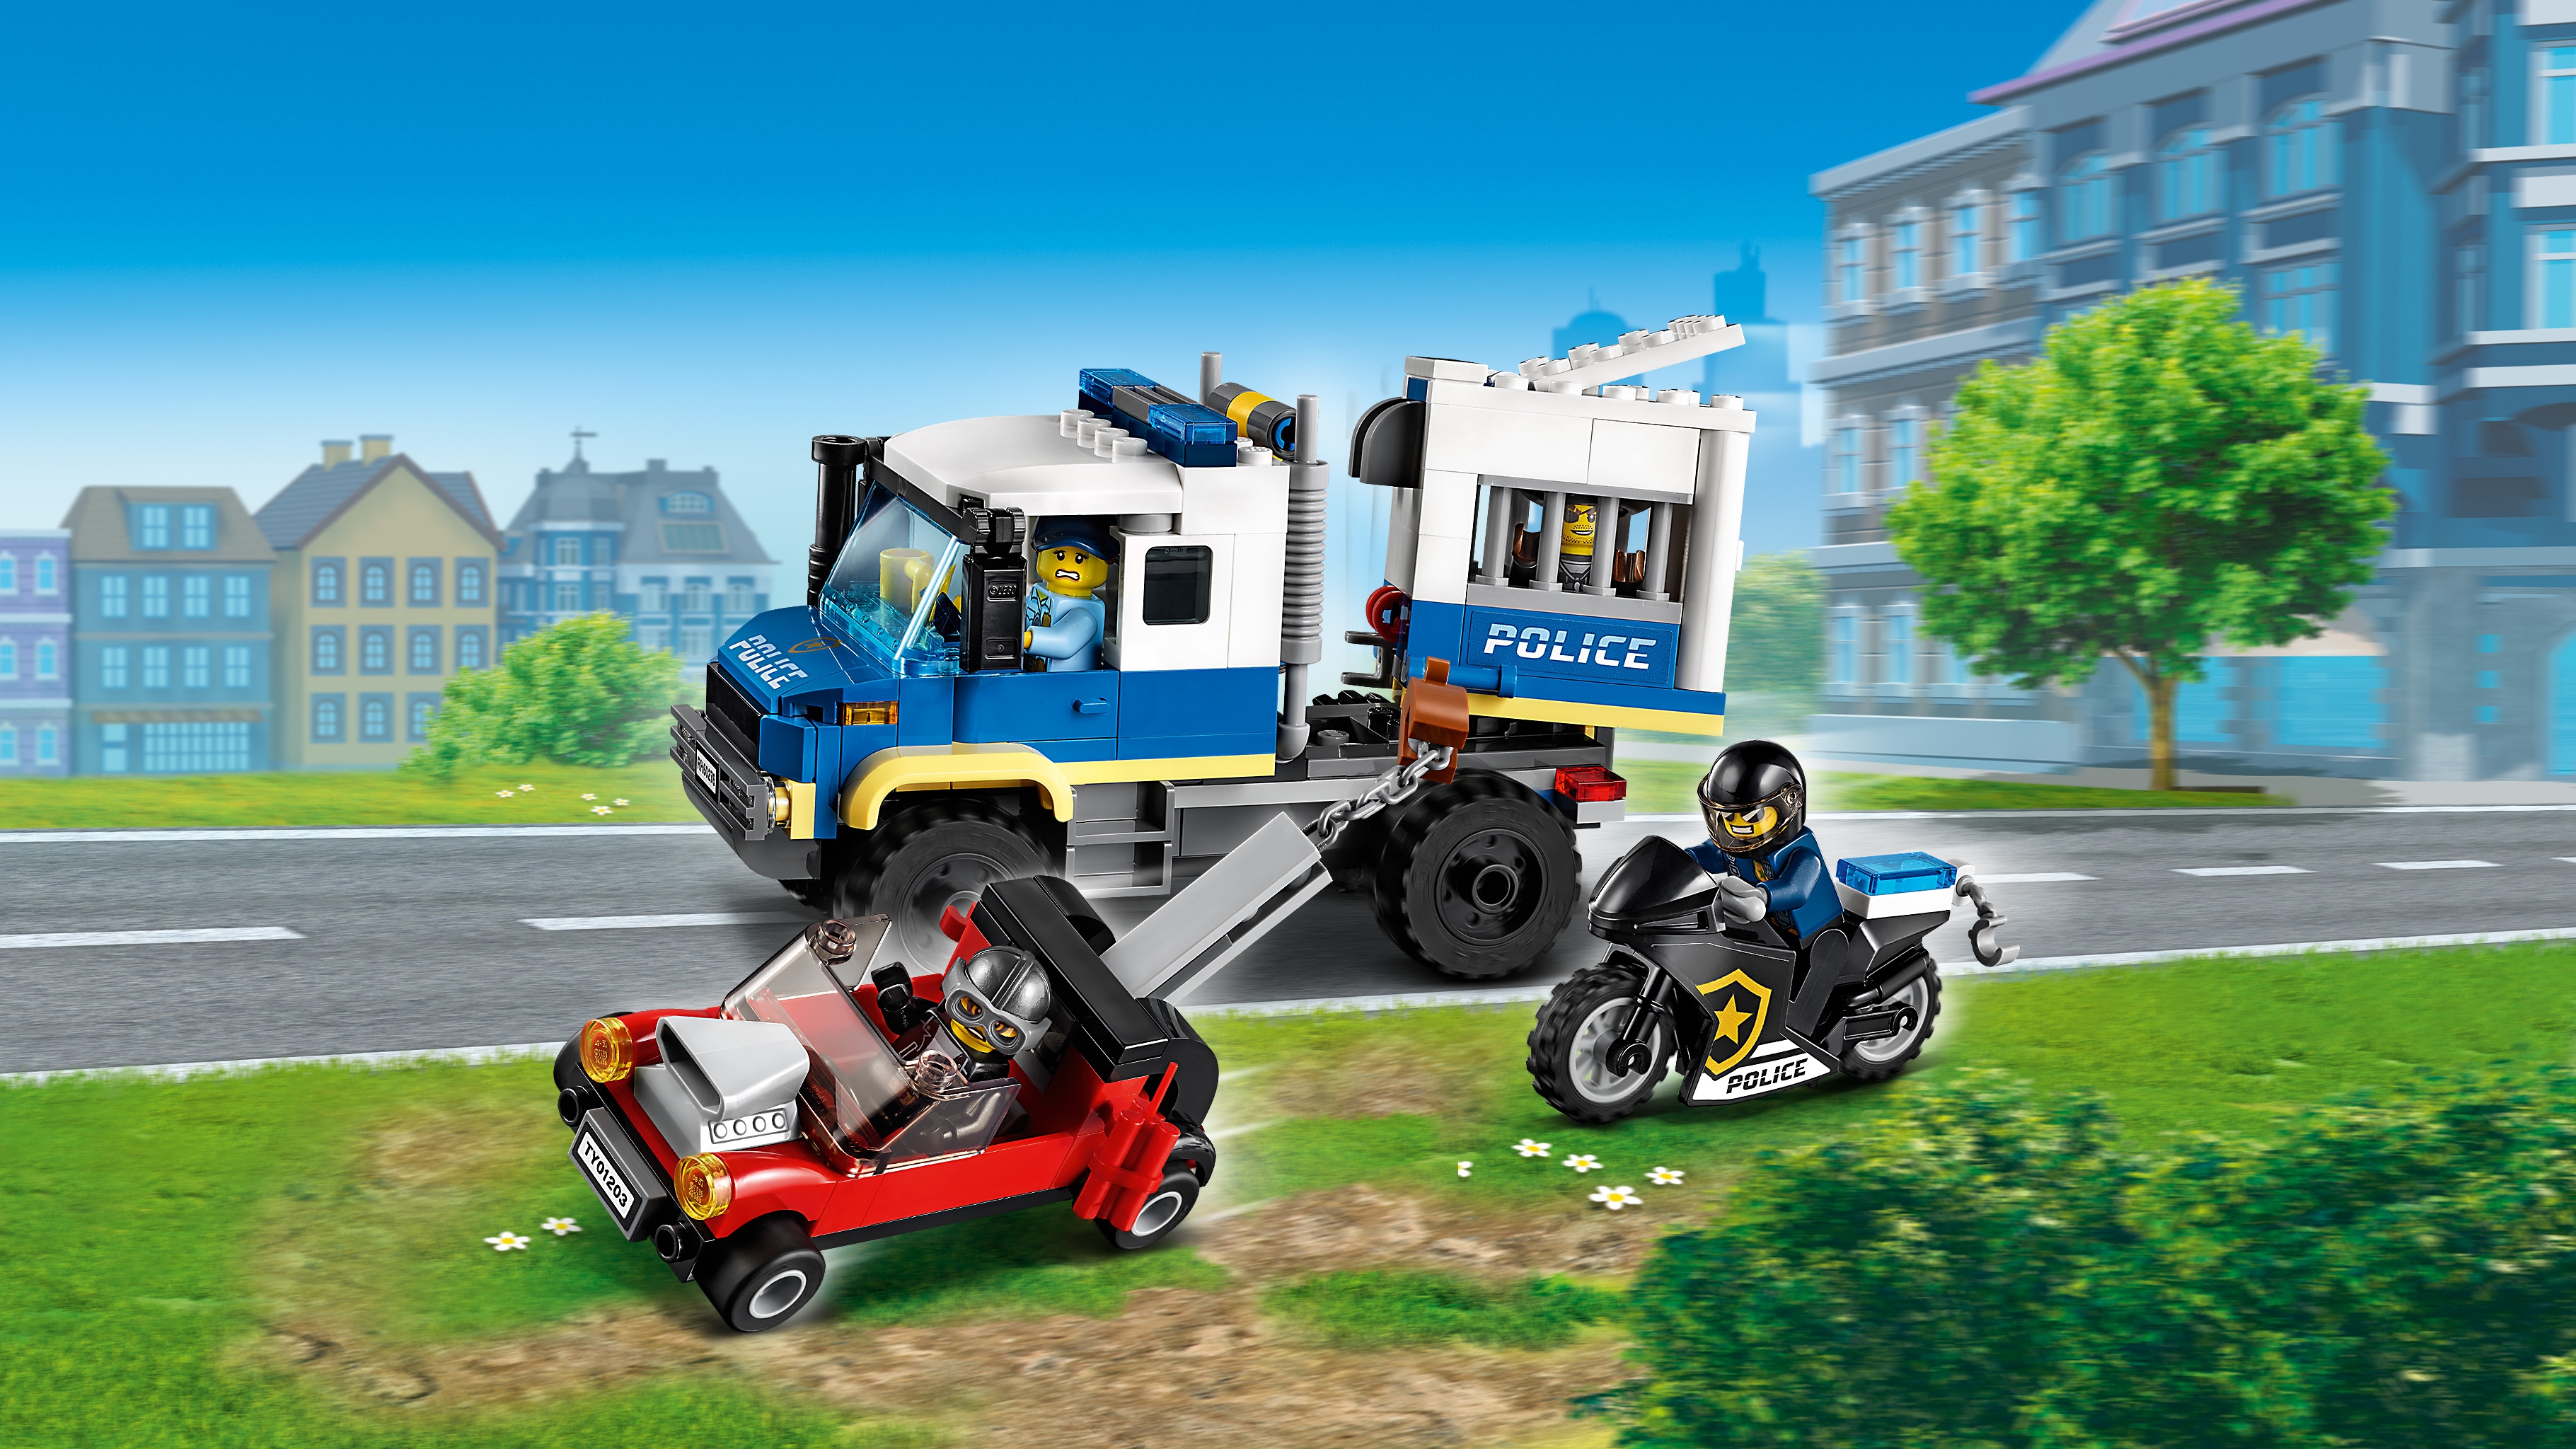 City Builder - LEGO.com for kids